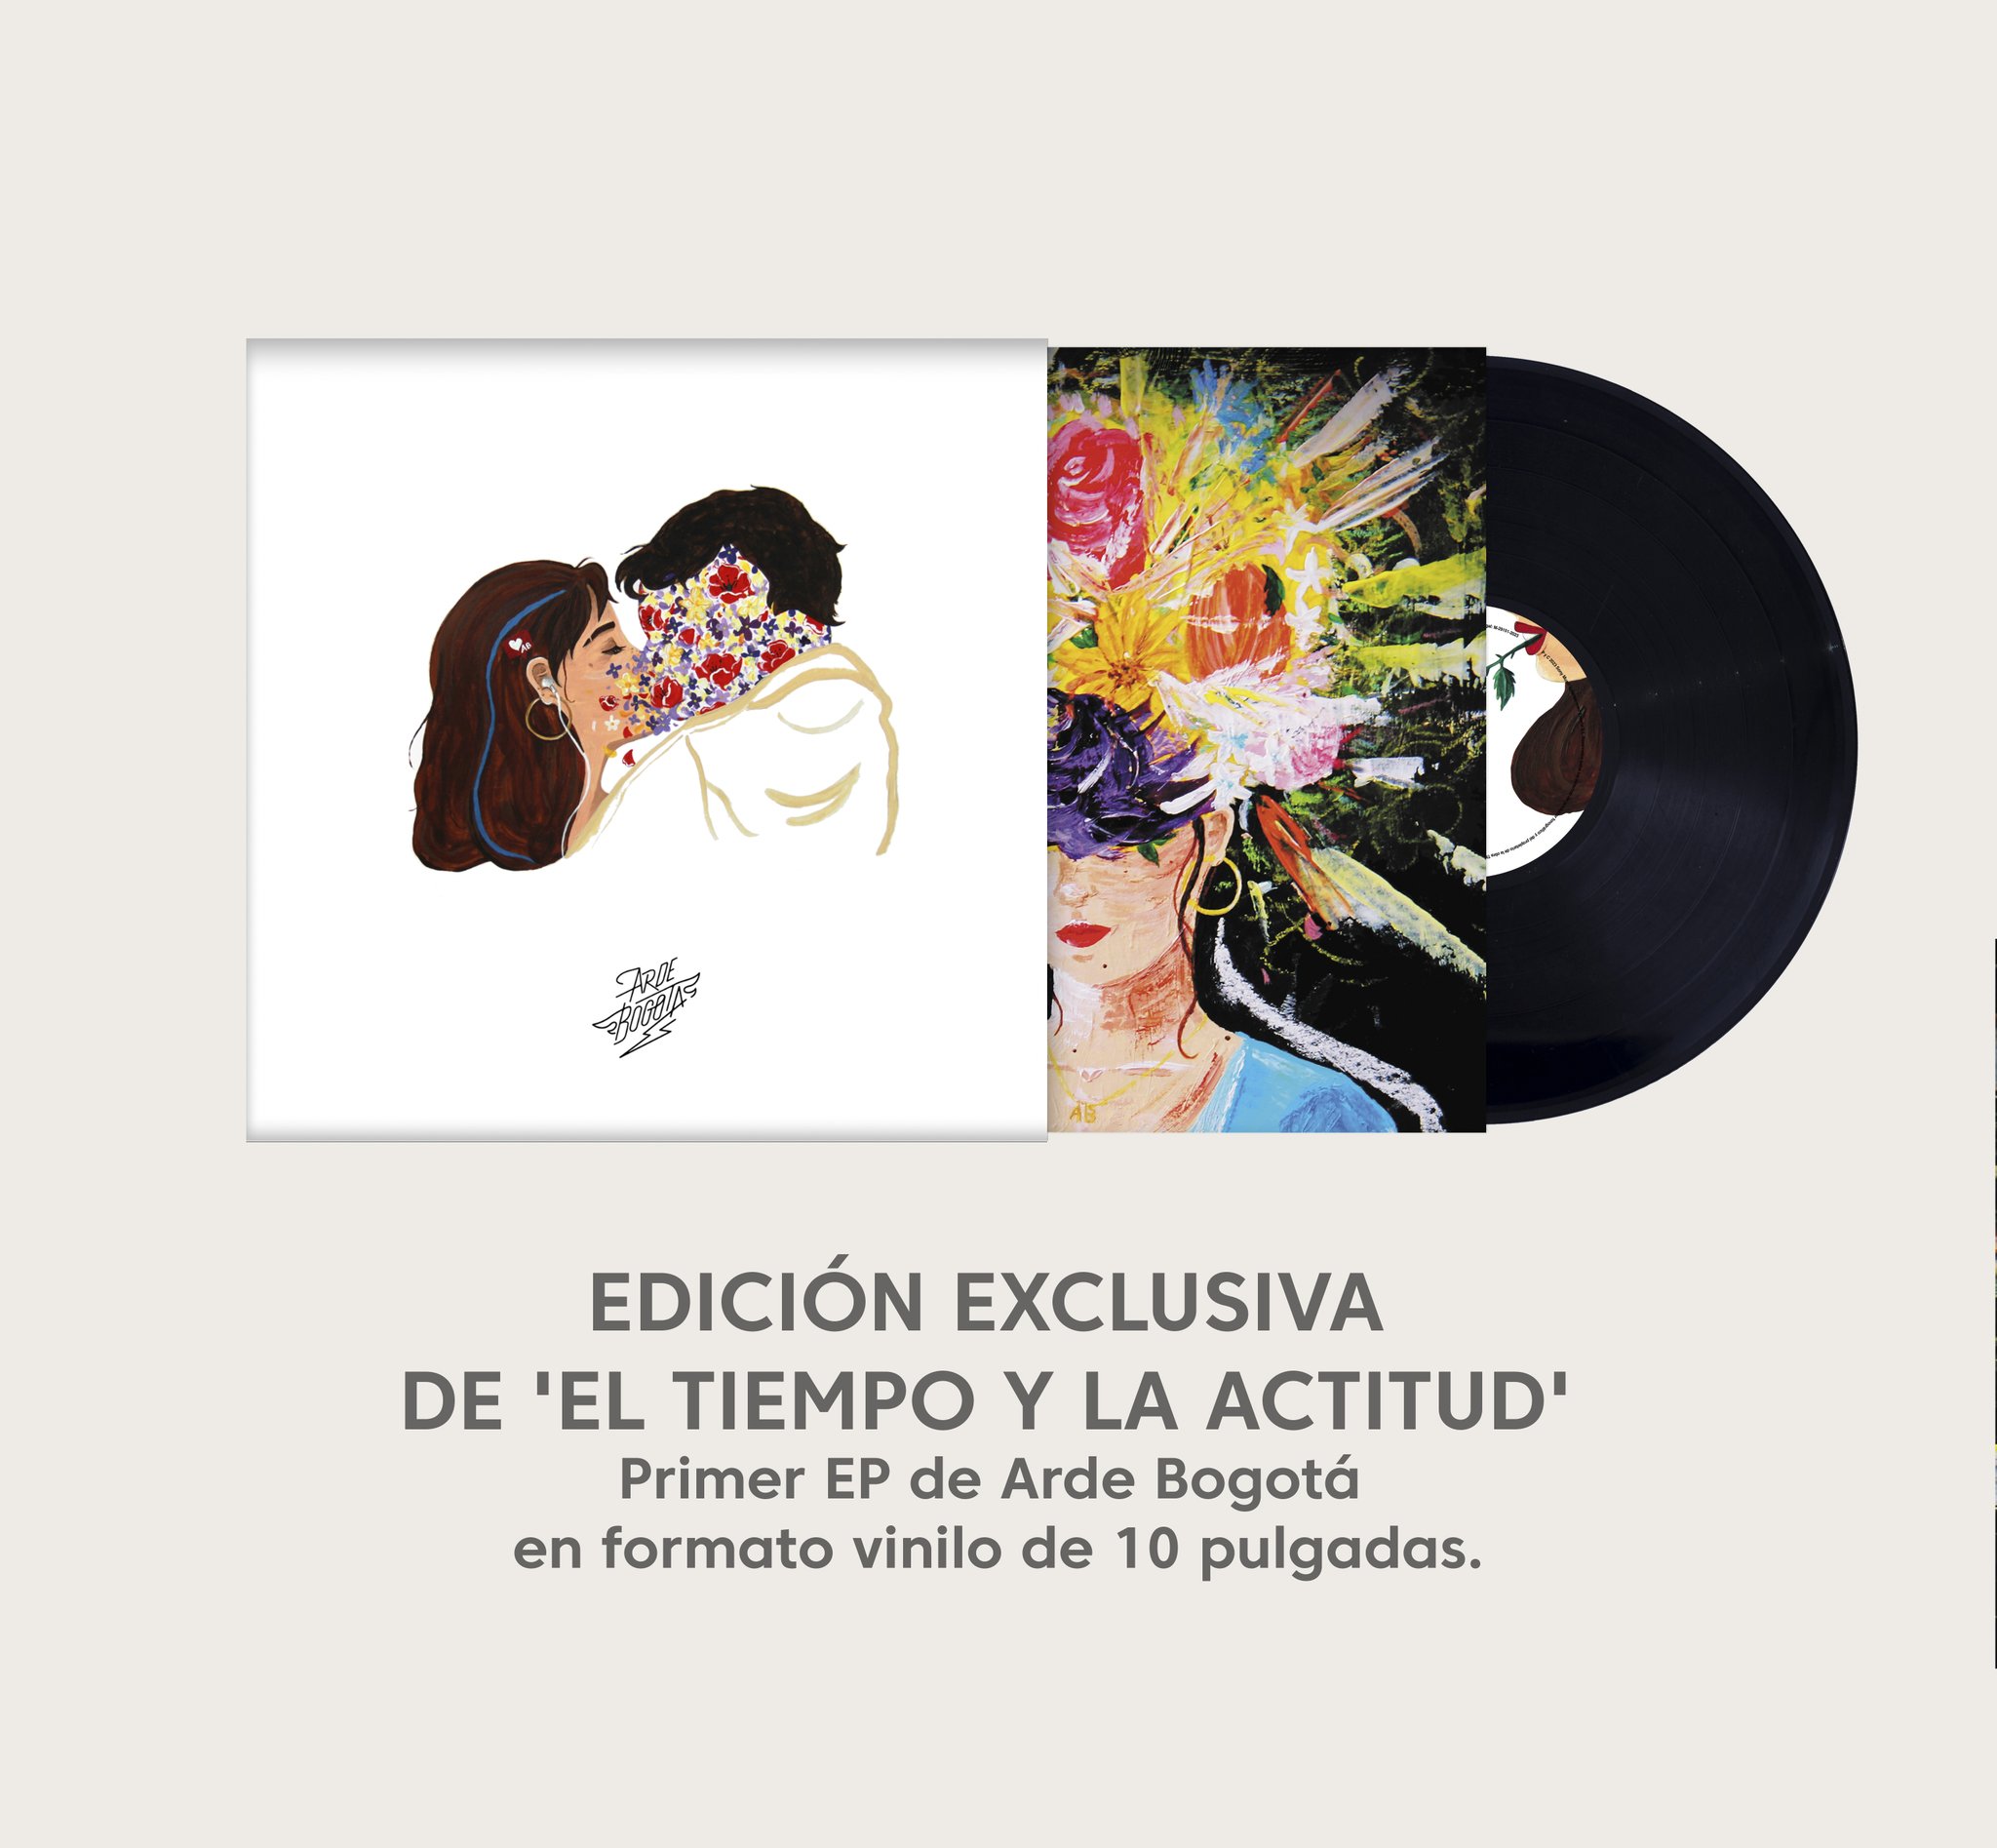 Habéis descubierto ya cuáles son los 3 hidden tracks que aparecen al final  del vinilo 'LA NOCHE'??, By Arde Bogotá